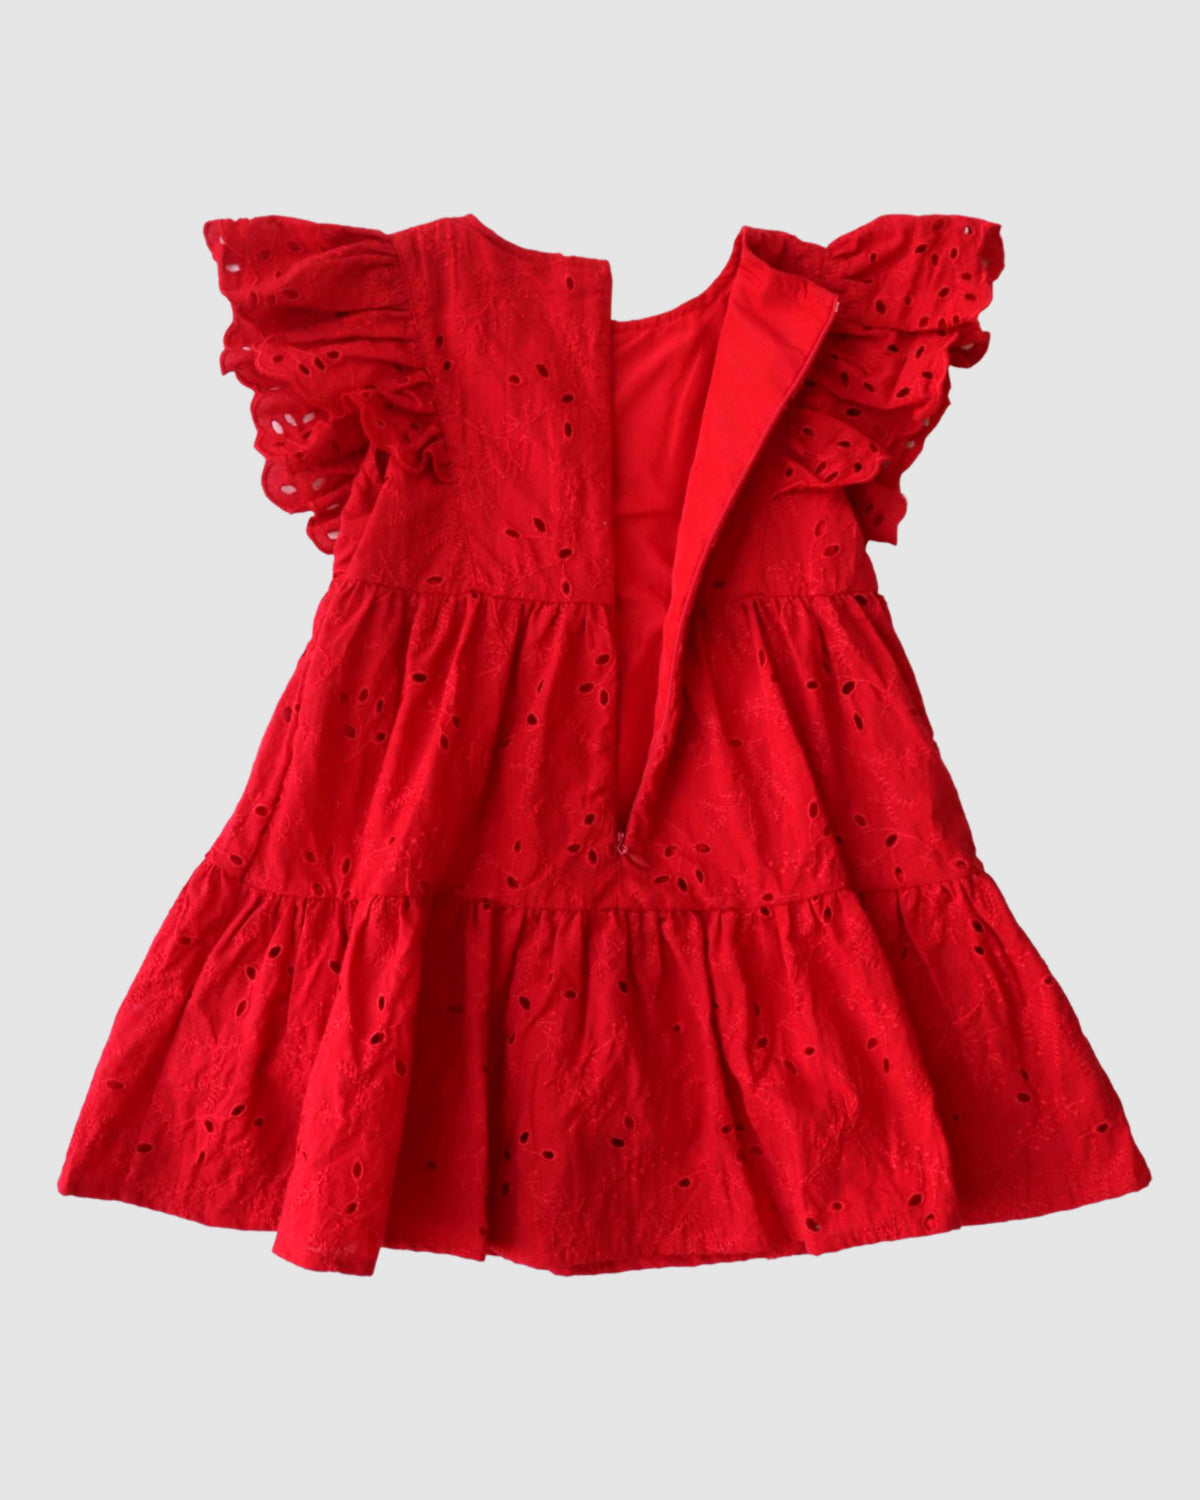 Belle Flutter Dress in Red Broderie